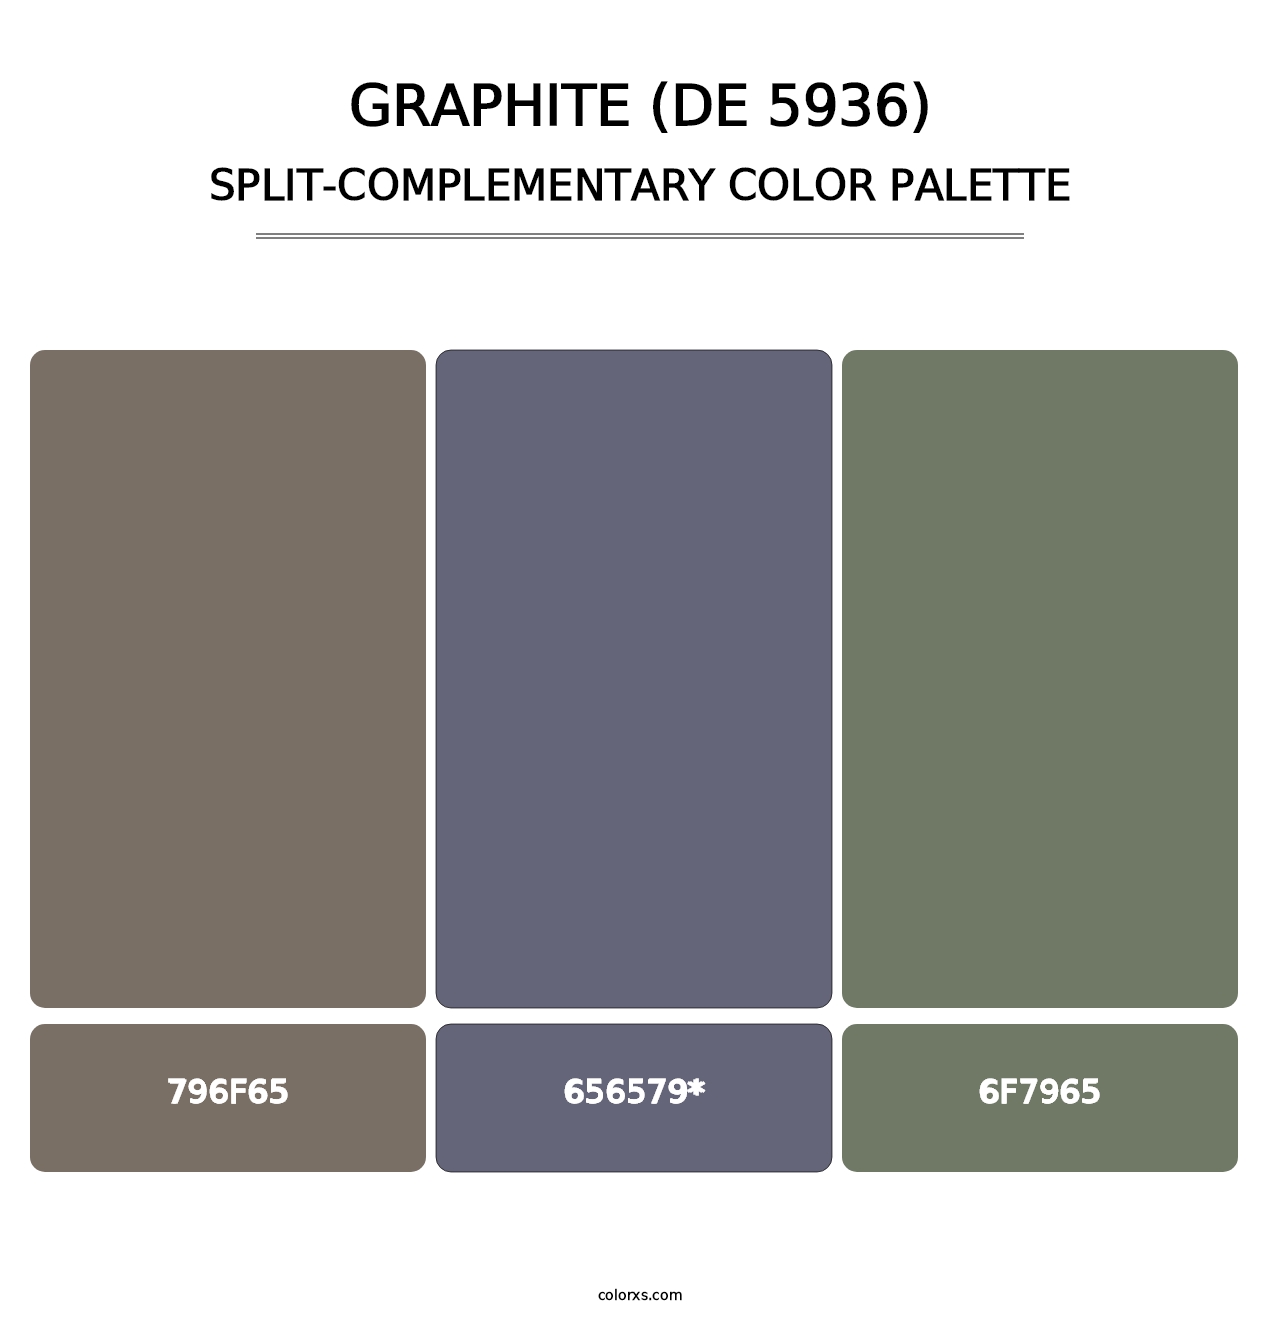 Graphite (DE 5936) - Split-Complementary Color Palette